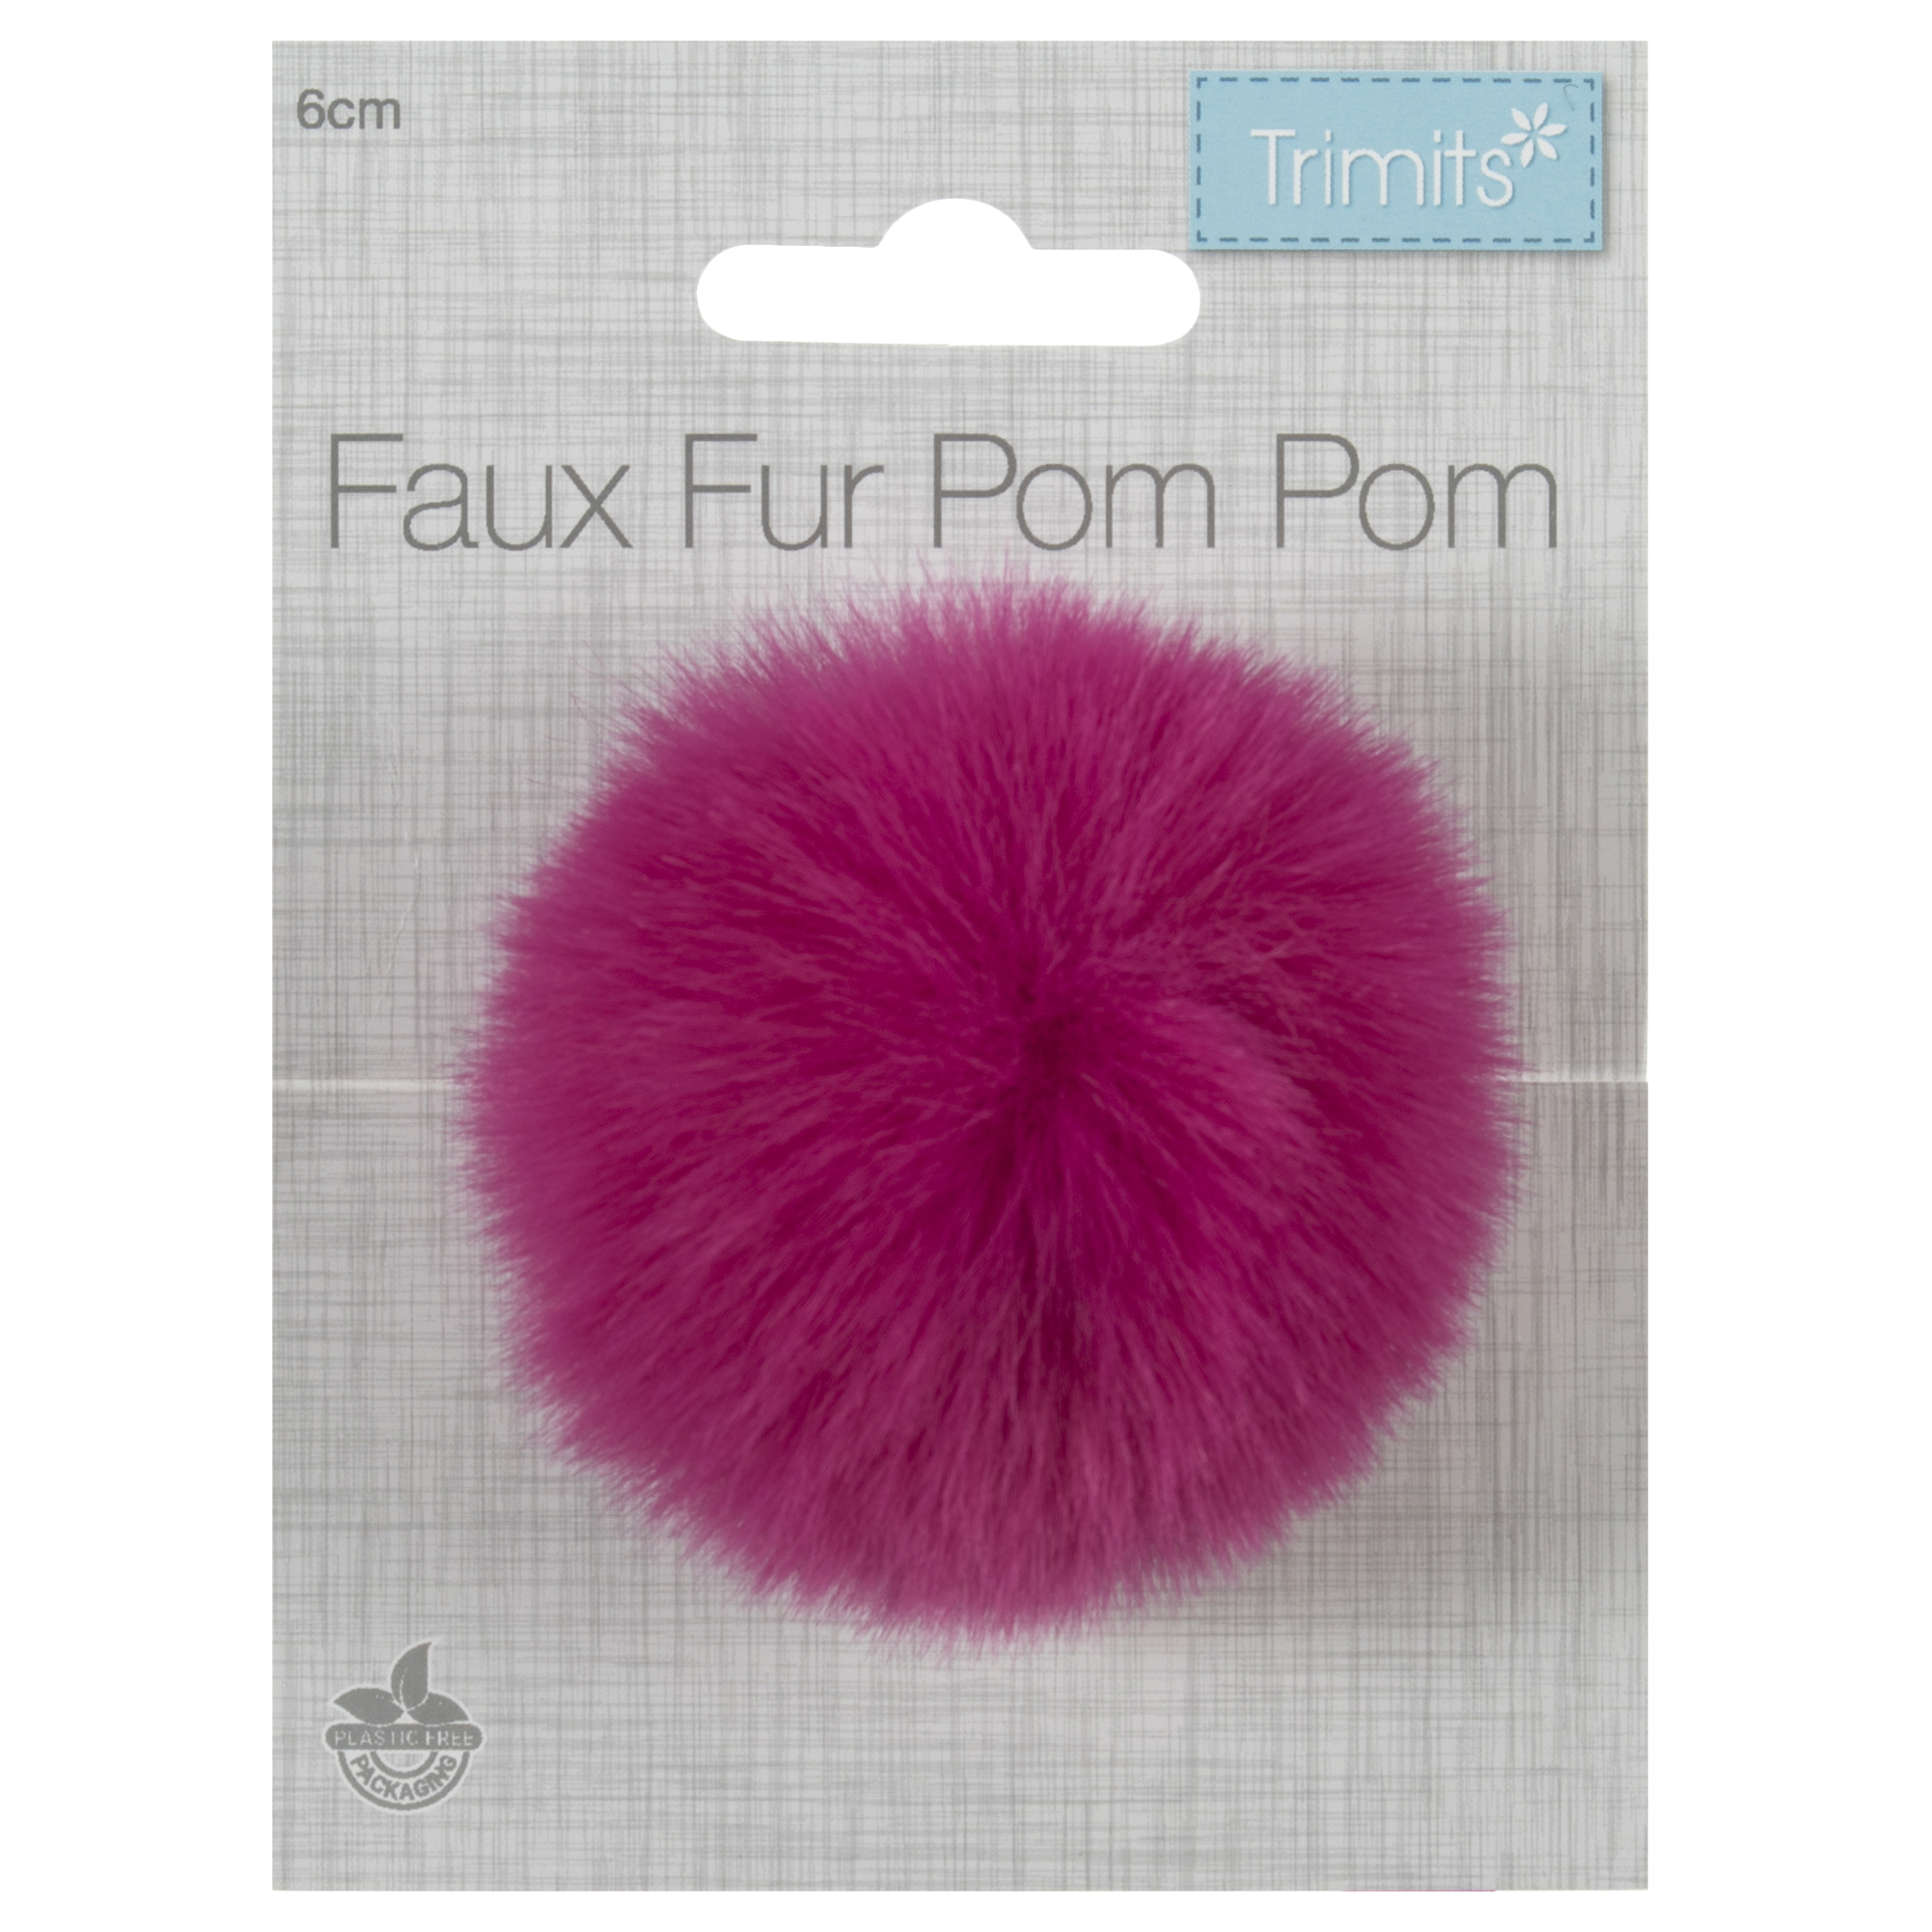 Trimits Faux Fur Pom Pom - Cerise (6cm)